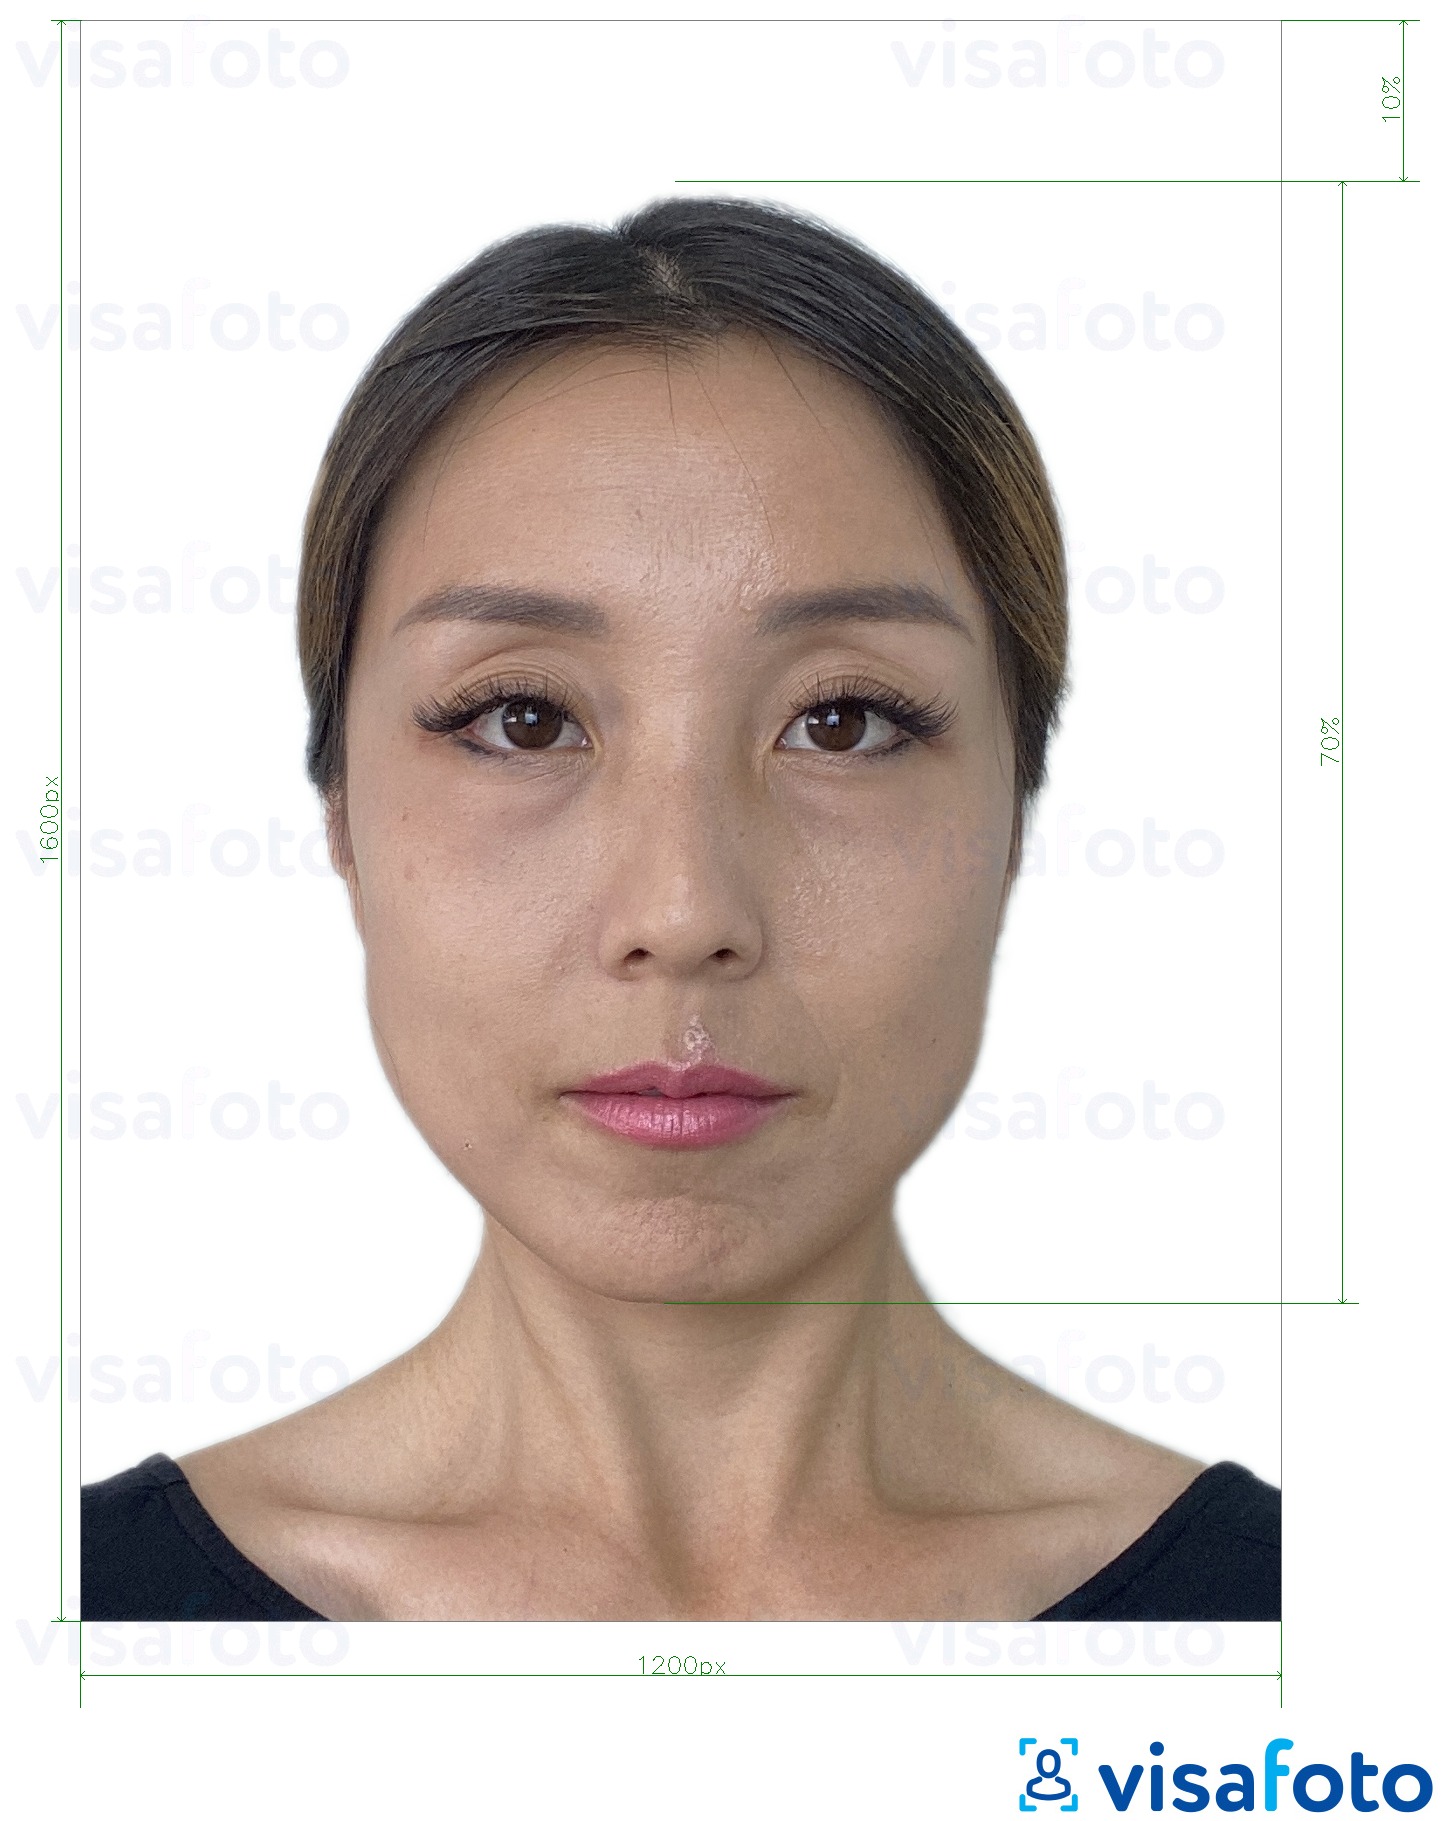 Пример за снимка за Хонг Конг онлайн електронна виза 1200x1600 пиксела с точна спецификация за размер